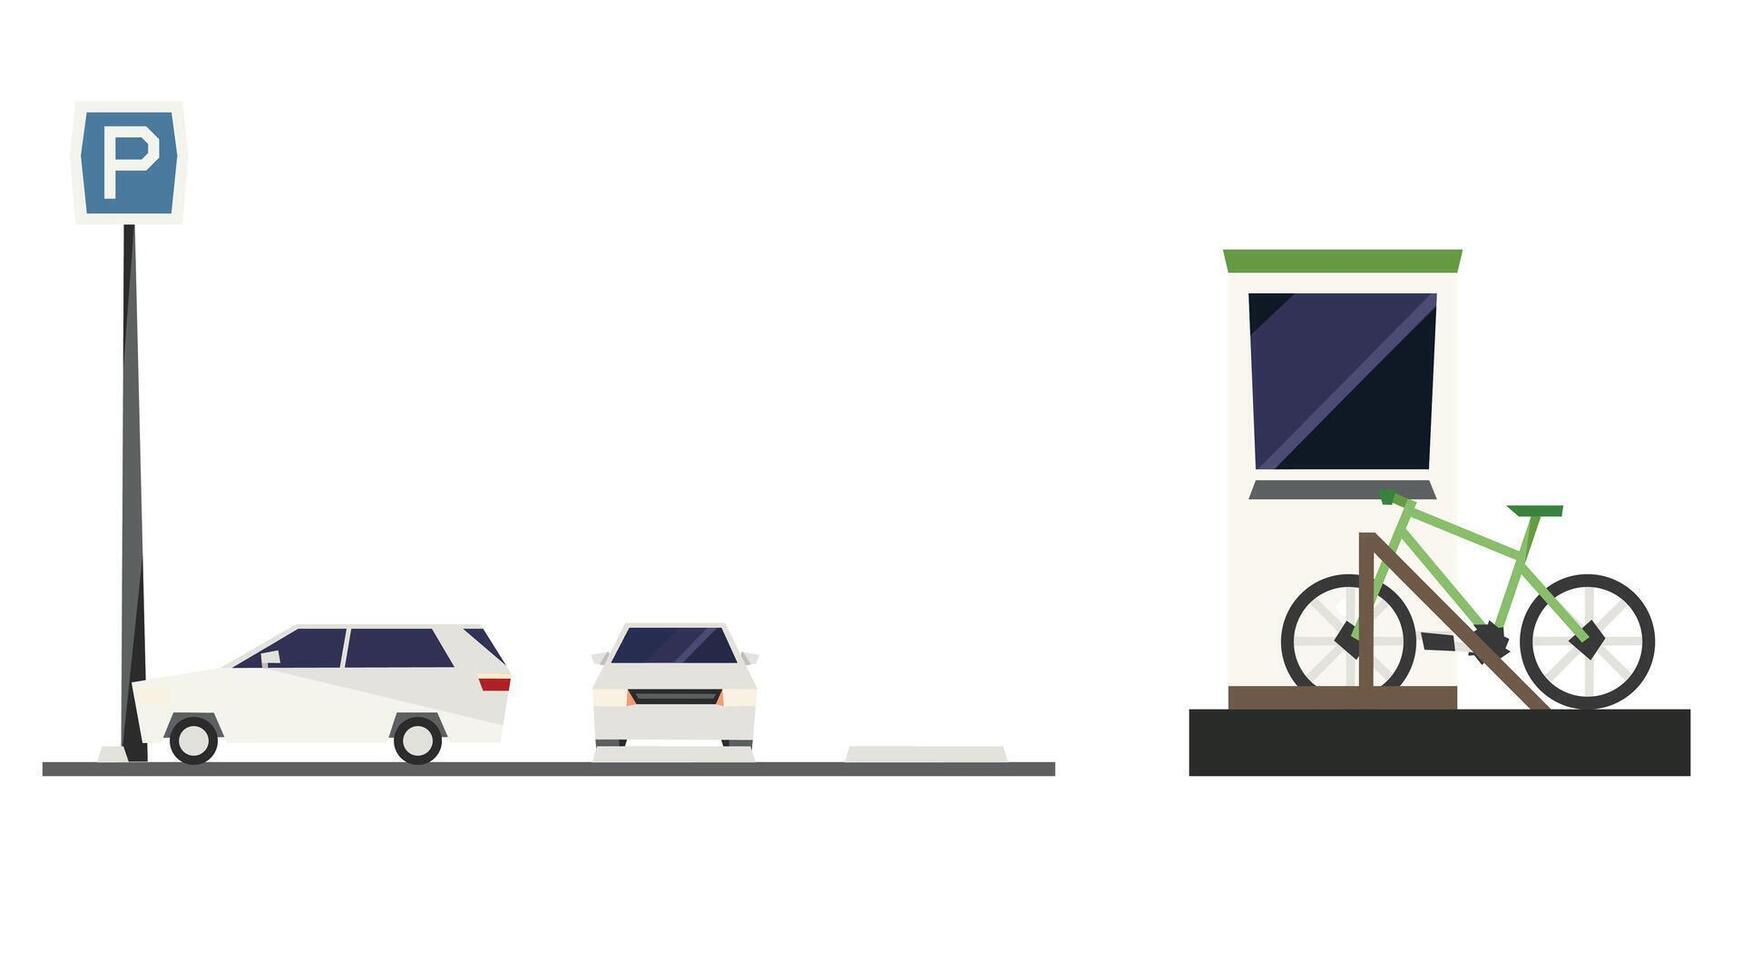 Publique transport prestations de service à l'intérieur le ville pour les passagers vecteur illustration